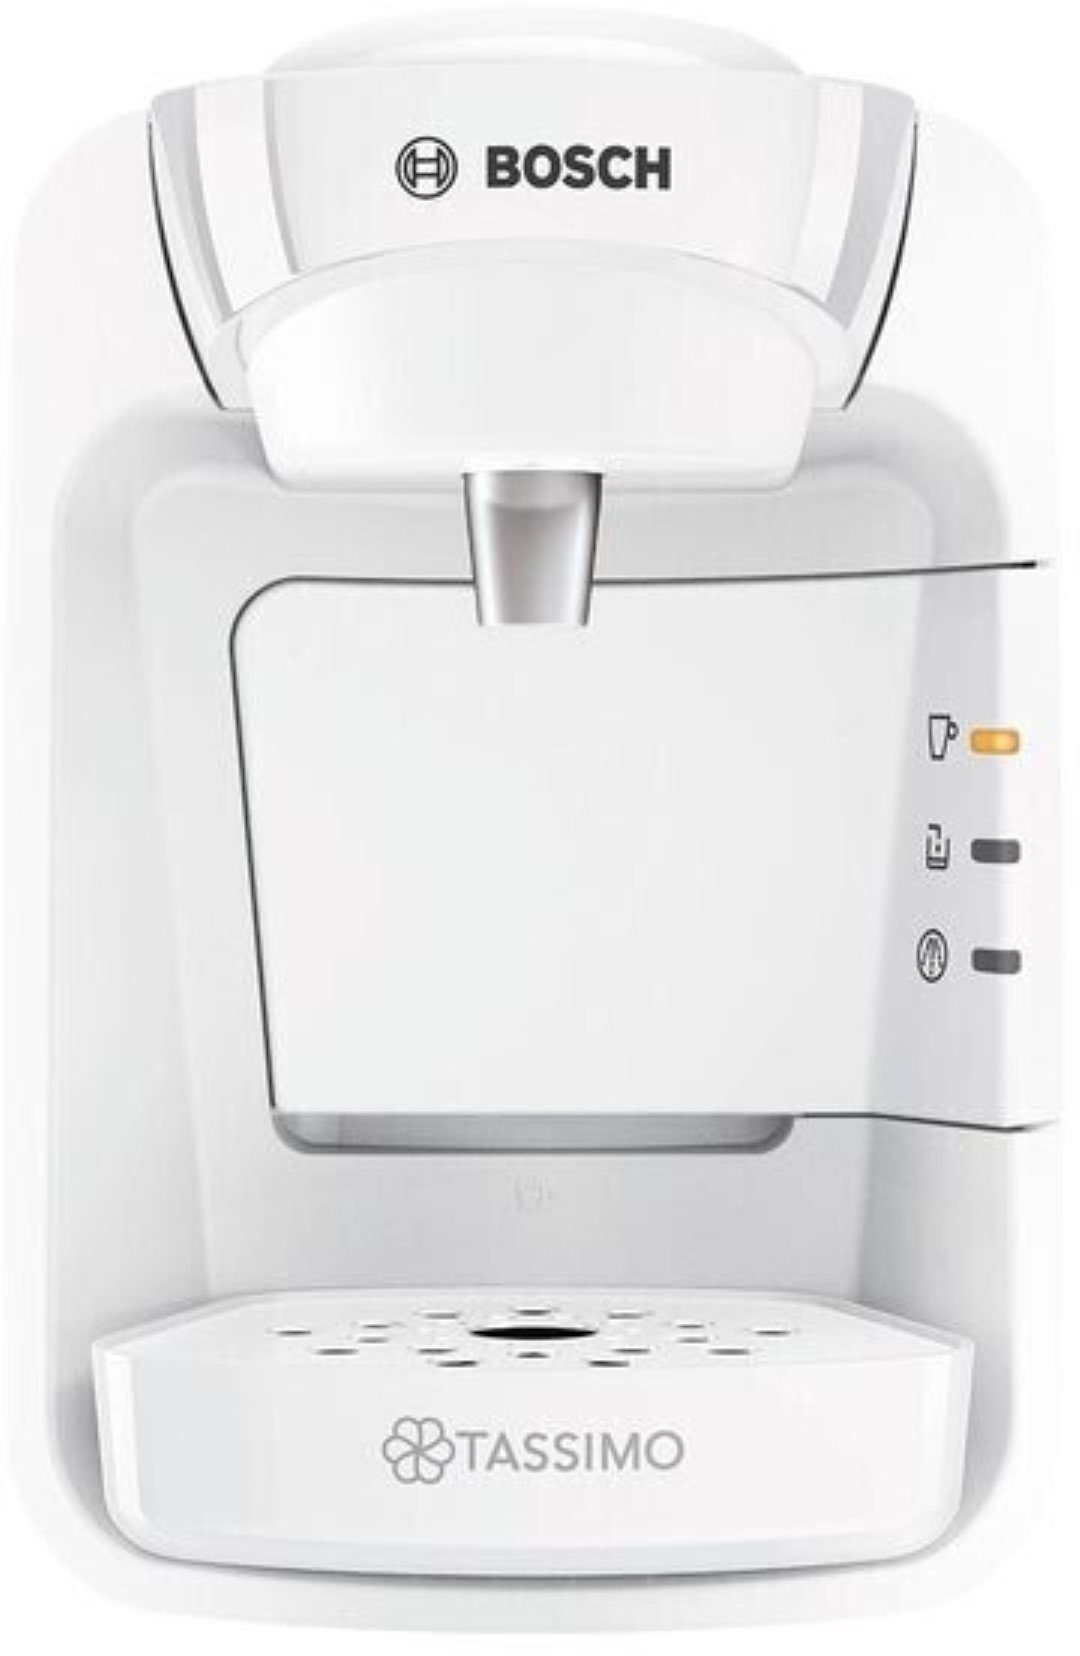 TASSIMO Kapsel-/Kaffeepadmaschine Bosch Tassimo Suny Kapselmaschine  TAS3104, einfach